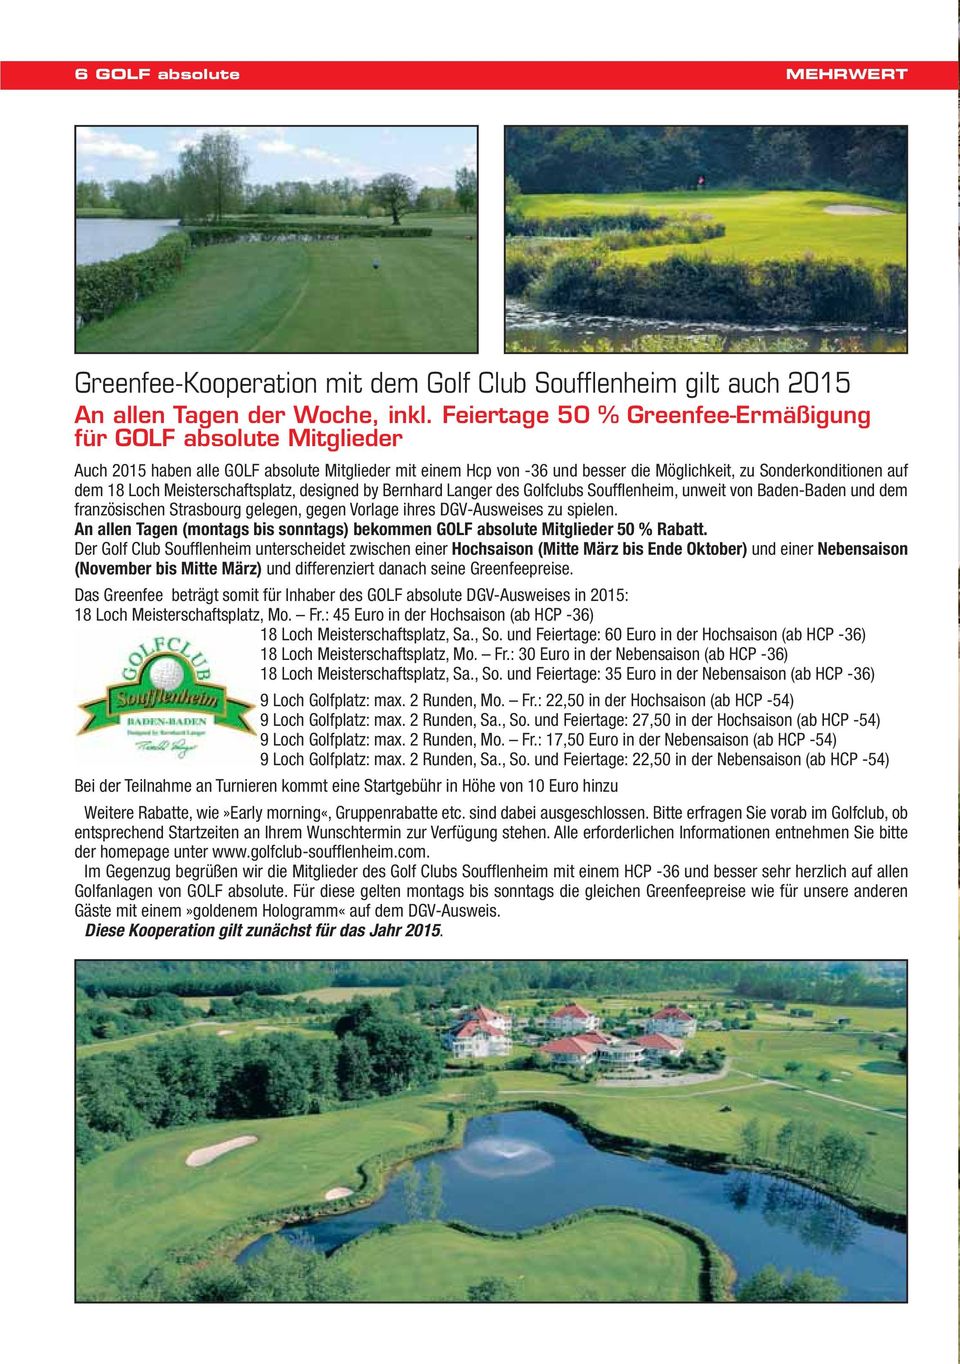 Meisterschaftsplatz, designed by Bernhard Langer des Golfclubs Soufflenheim, unweit von Baden-Baden und dem französischen Strasbourg gelegen, gegen Vorlage ihres DGV-Ausweises zu spielen.